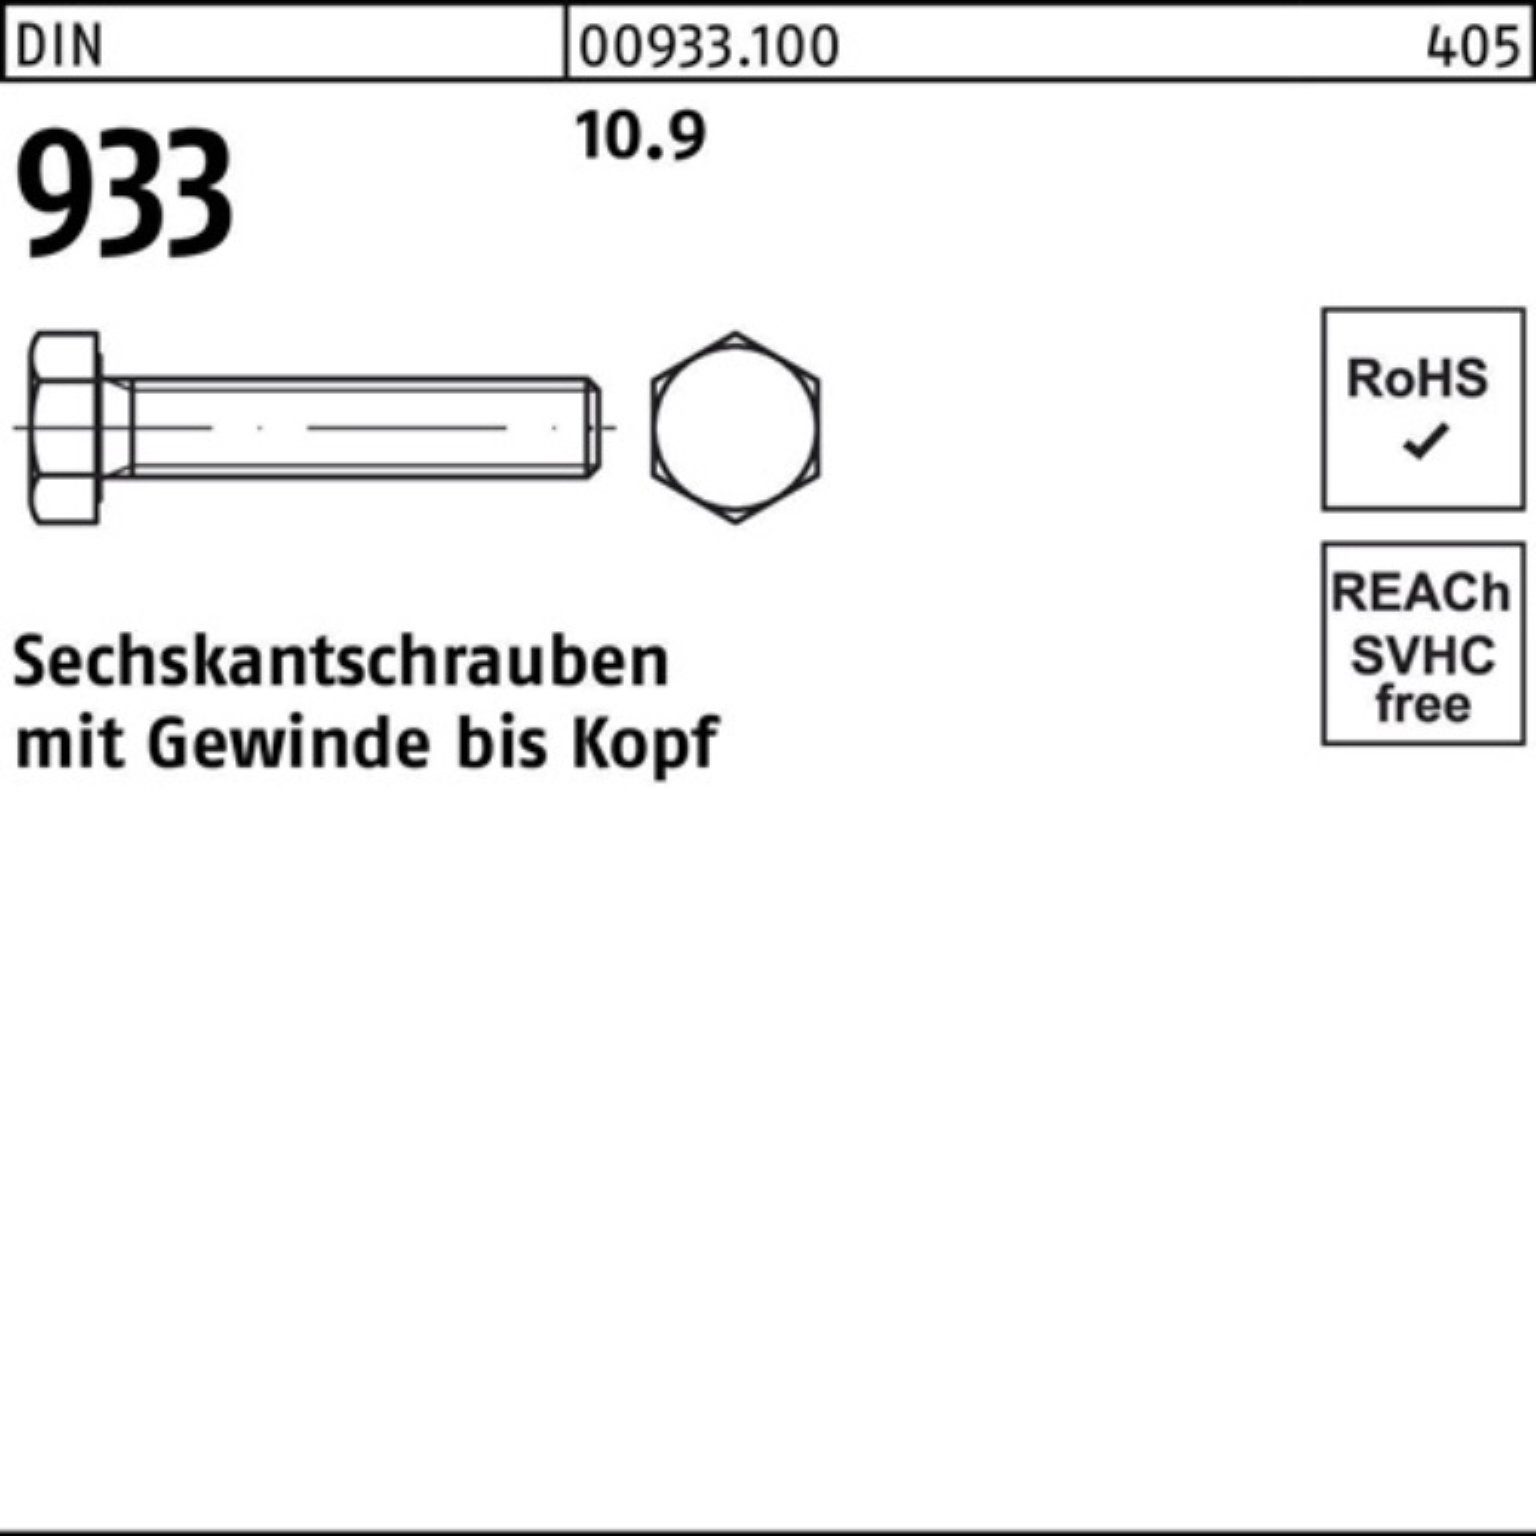 Pack Reyher DIN 10.9 Stück 180 M16x VG Sechskantschraube 933 93 25 DIN Sechskantschraube 100er